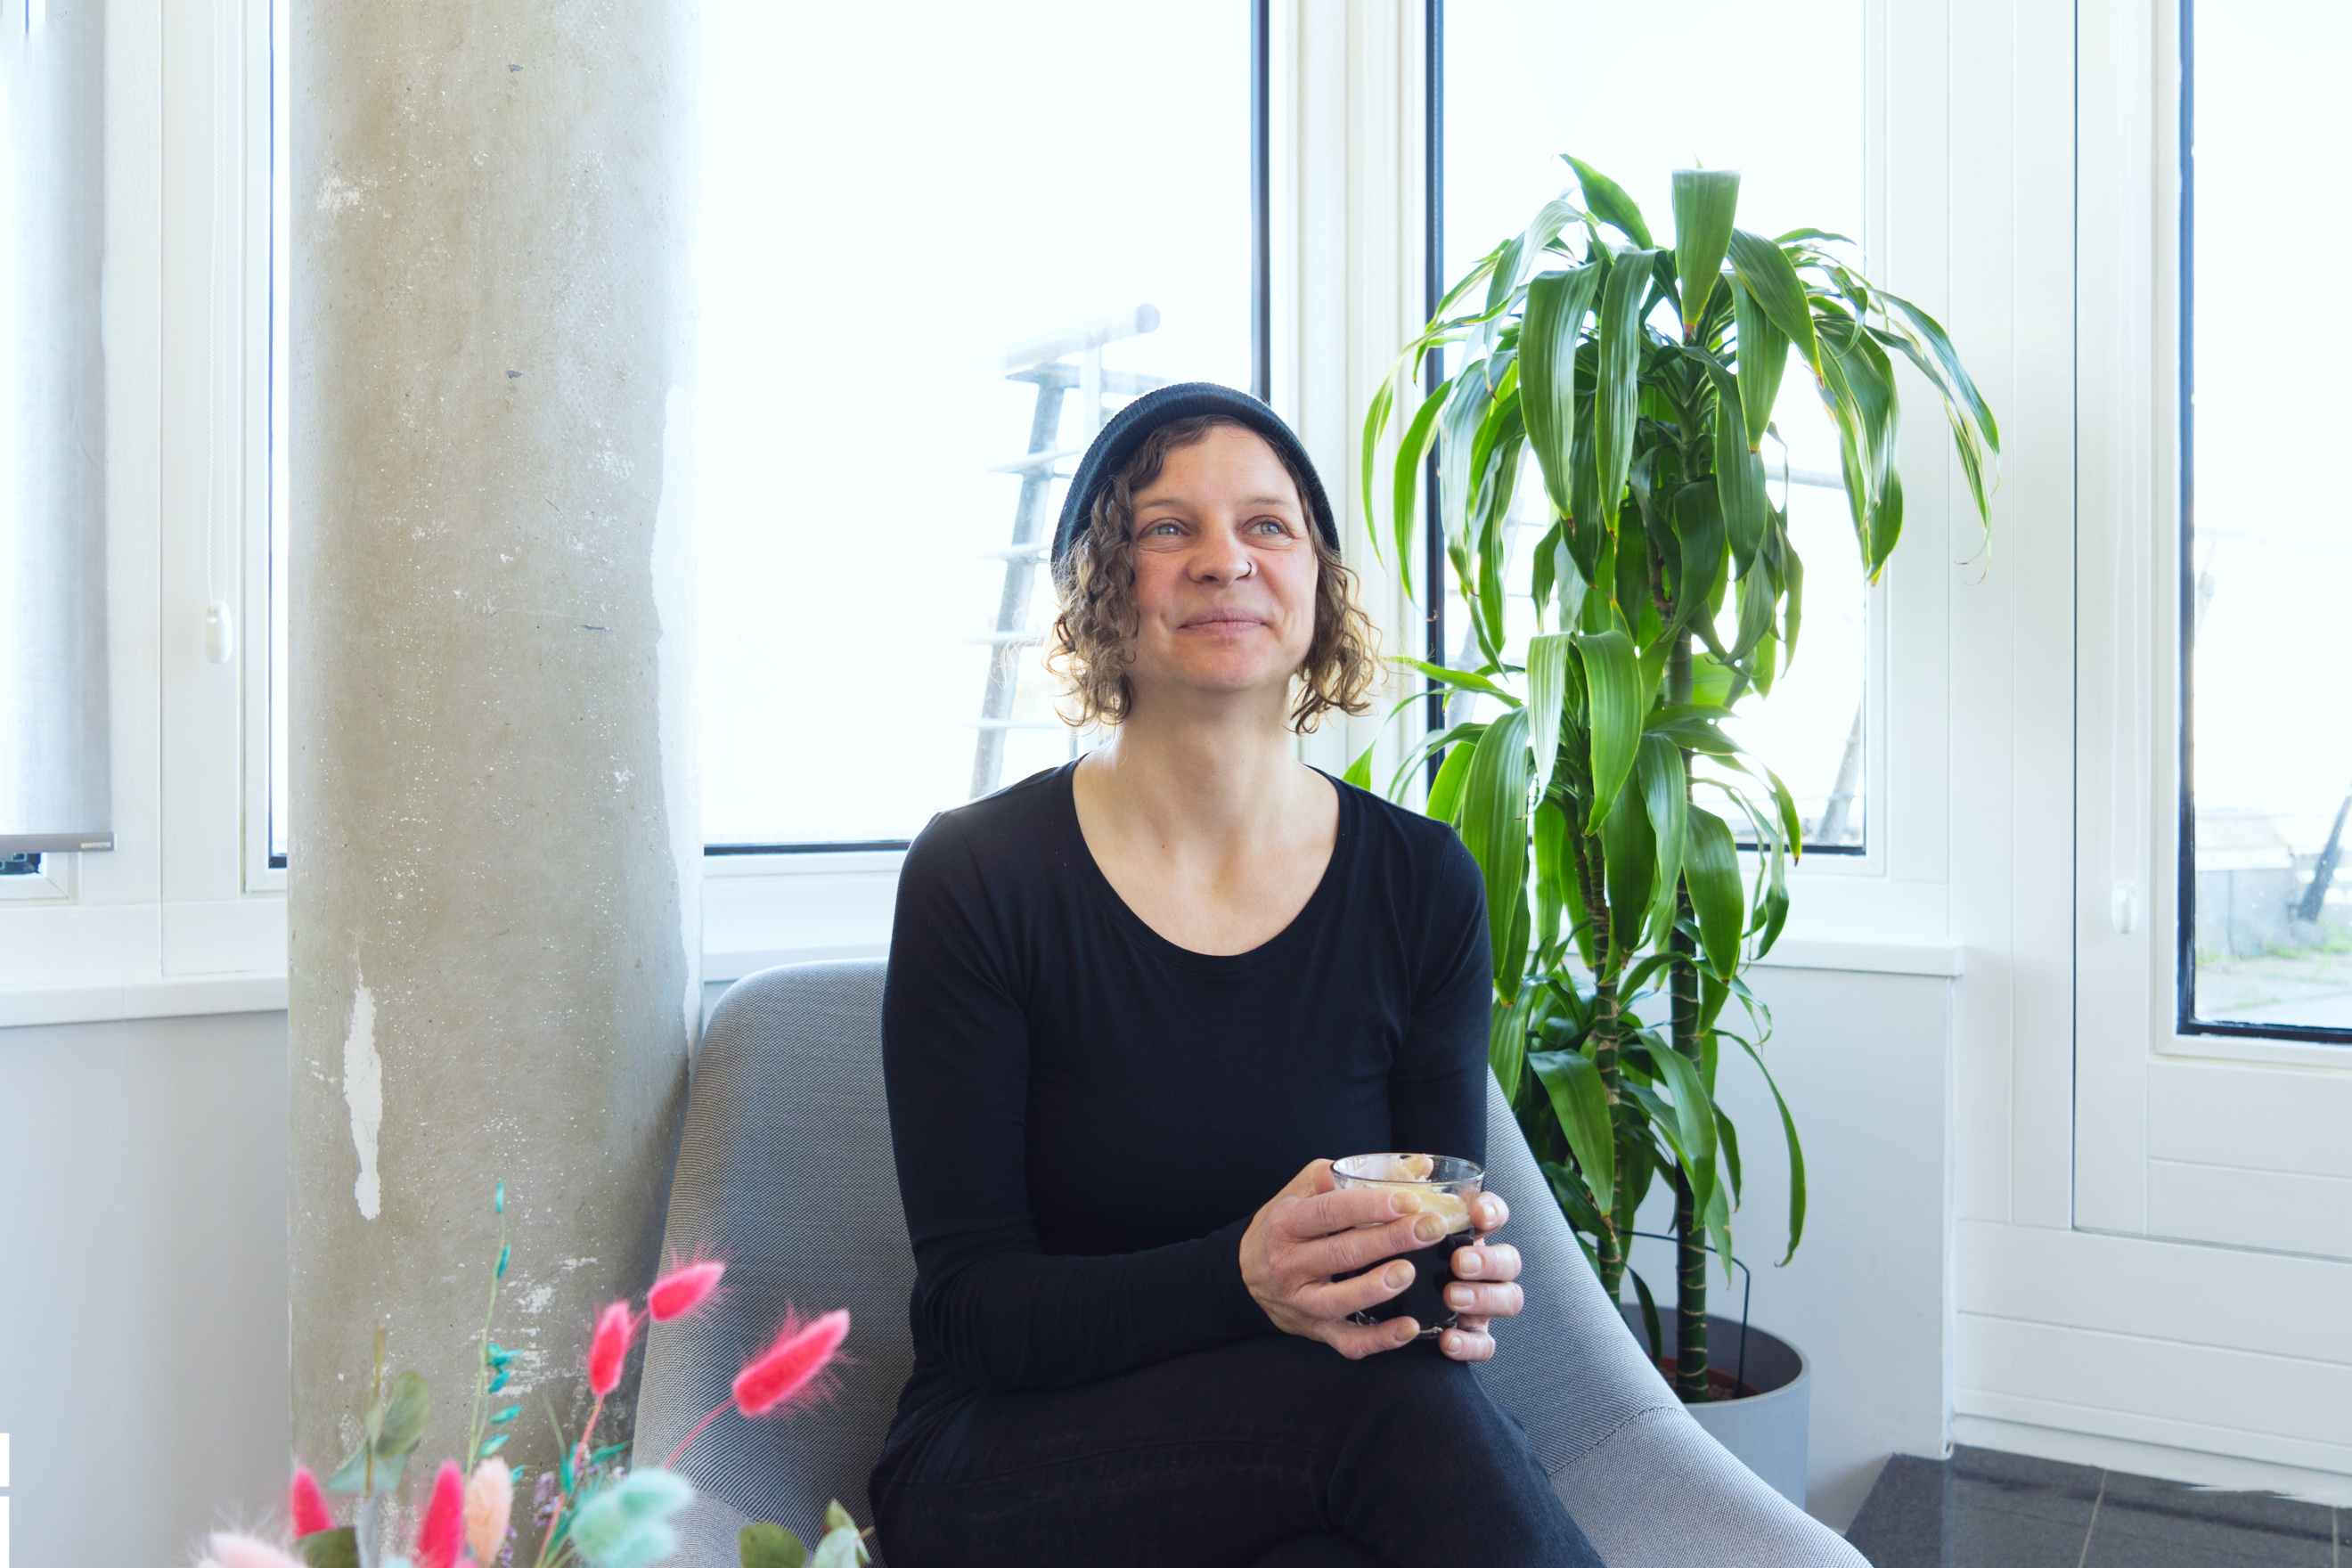 Interviewpartnerin Sonja sitzt lächelnd auf einem Sessel im Büro des DigitalService